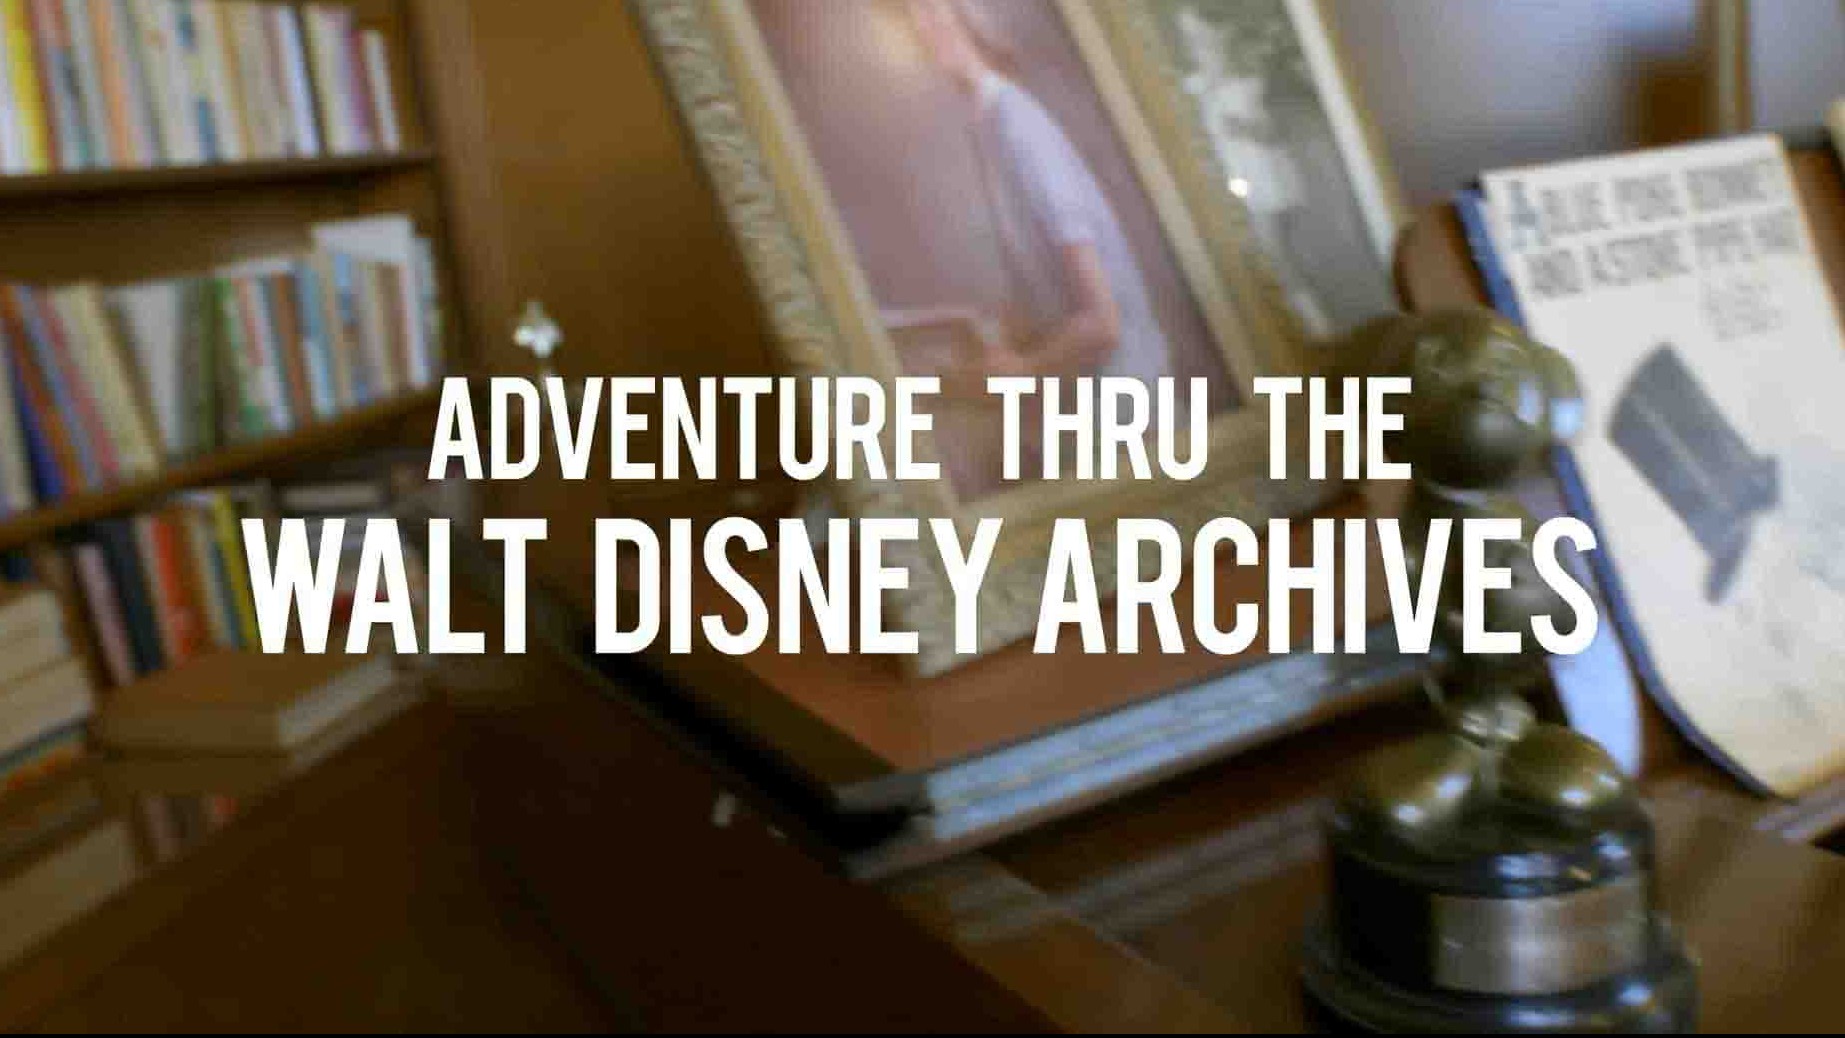 迪士尼纪录片《华特迪士尼档案馆探险 Adventure Thru the Walt Disney Archives 2020》全1集 英语中英双字 1080P高清网盘下载